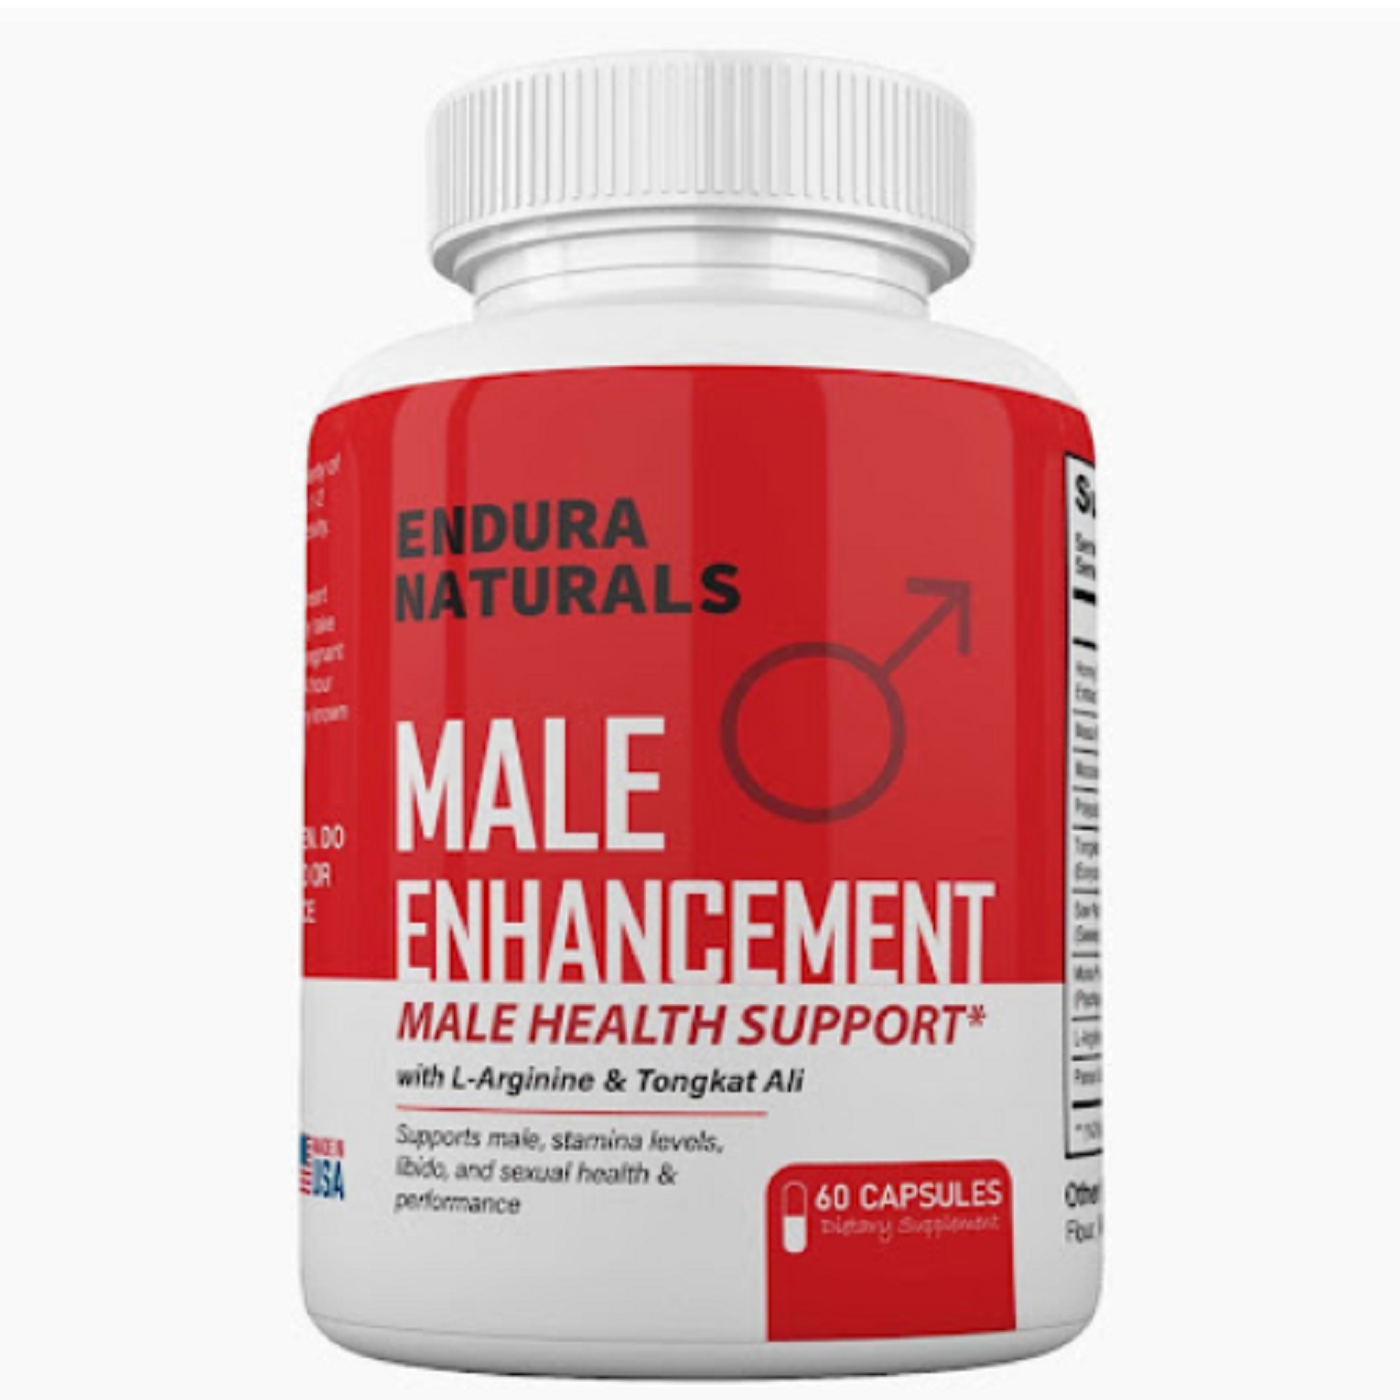 Endura Naturals Male Enhancement Bottle - Copy.png